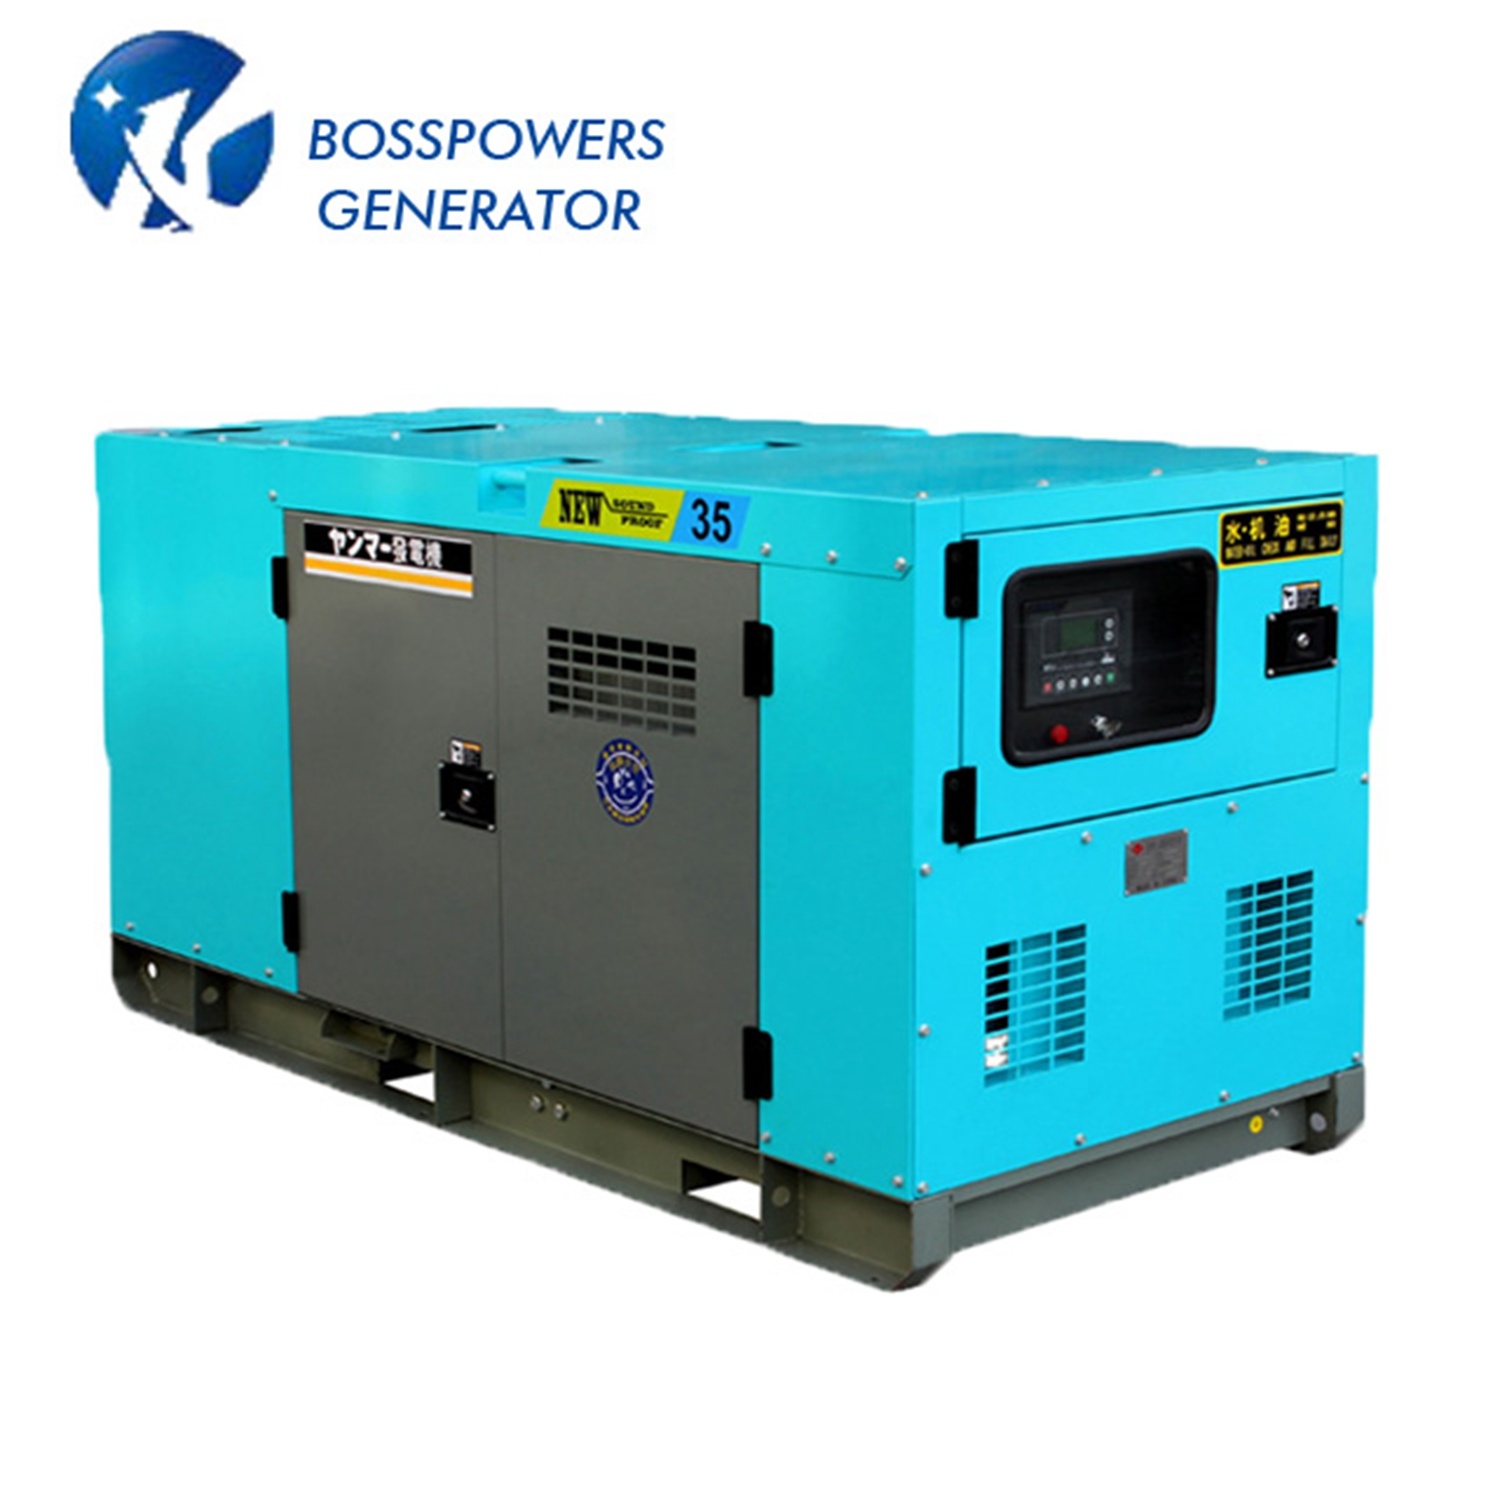 12kVA 60Hz Yangdong Silent Electric Generating Set Diesel Genset Soundproof Open Power Generator Price